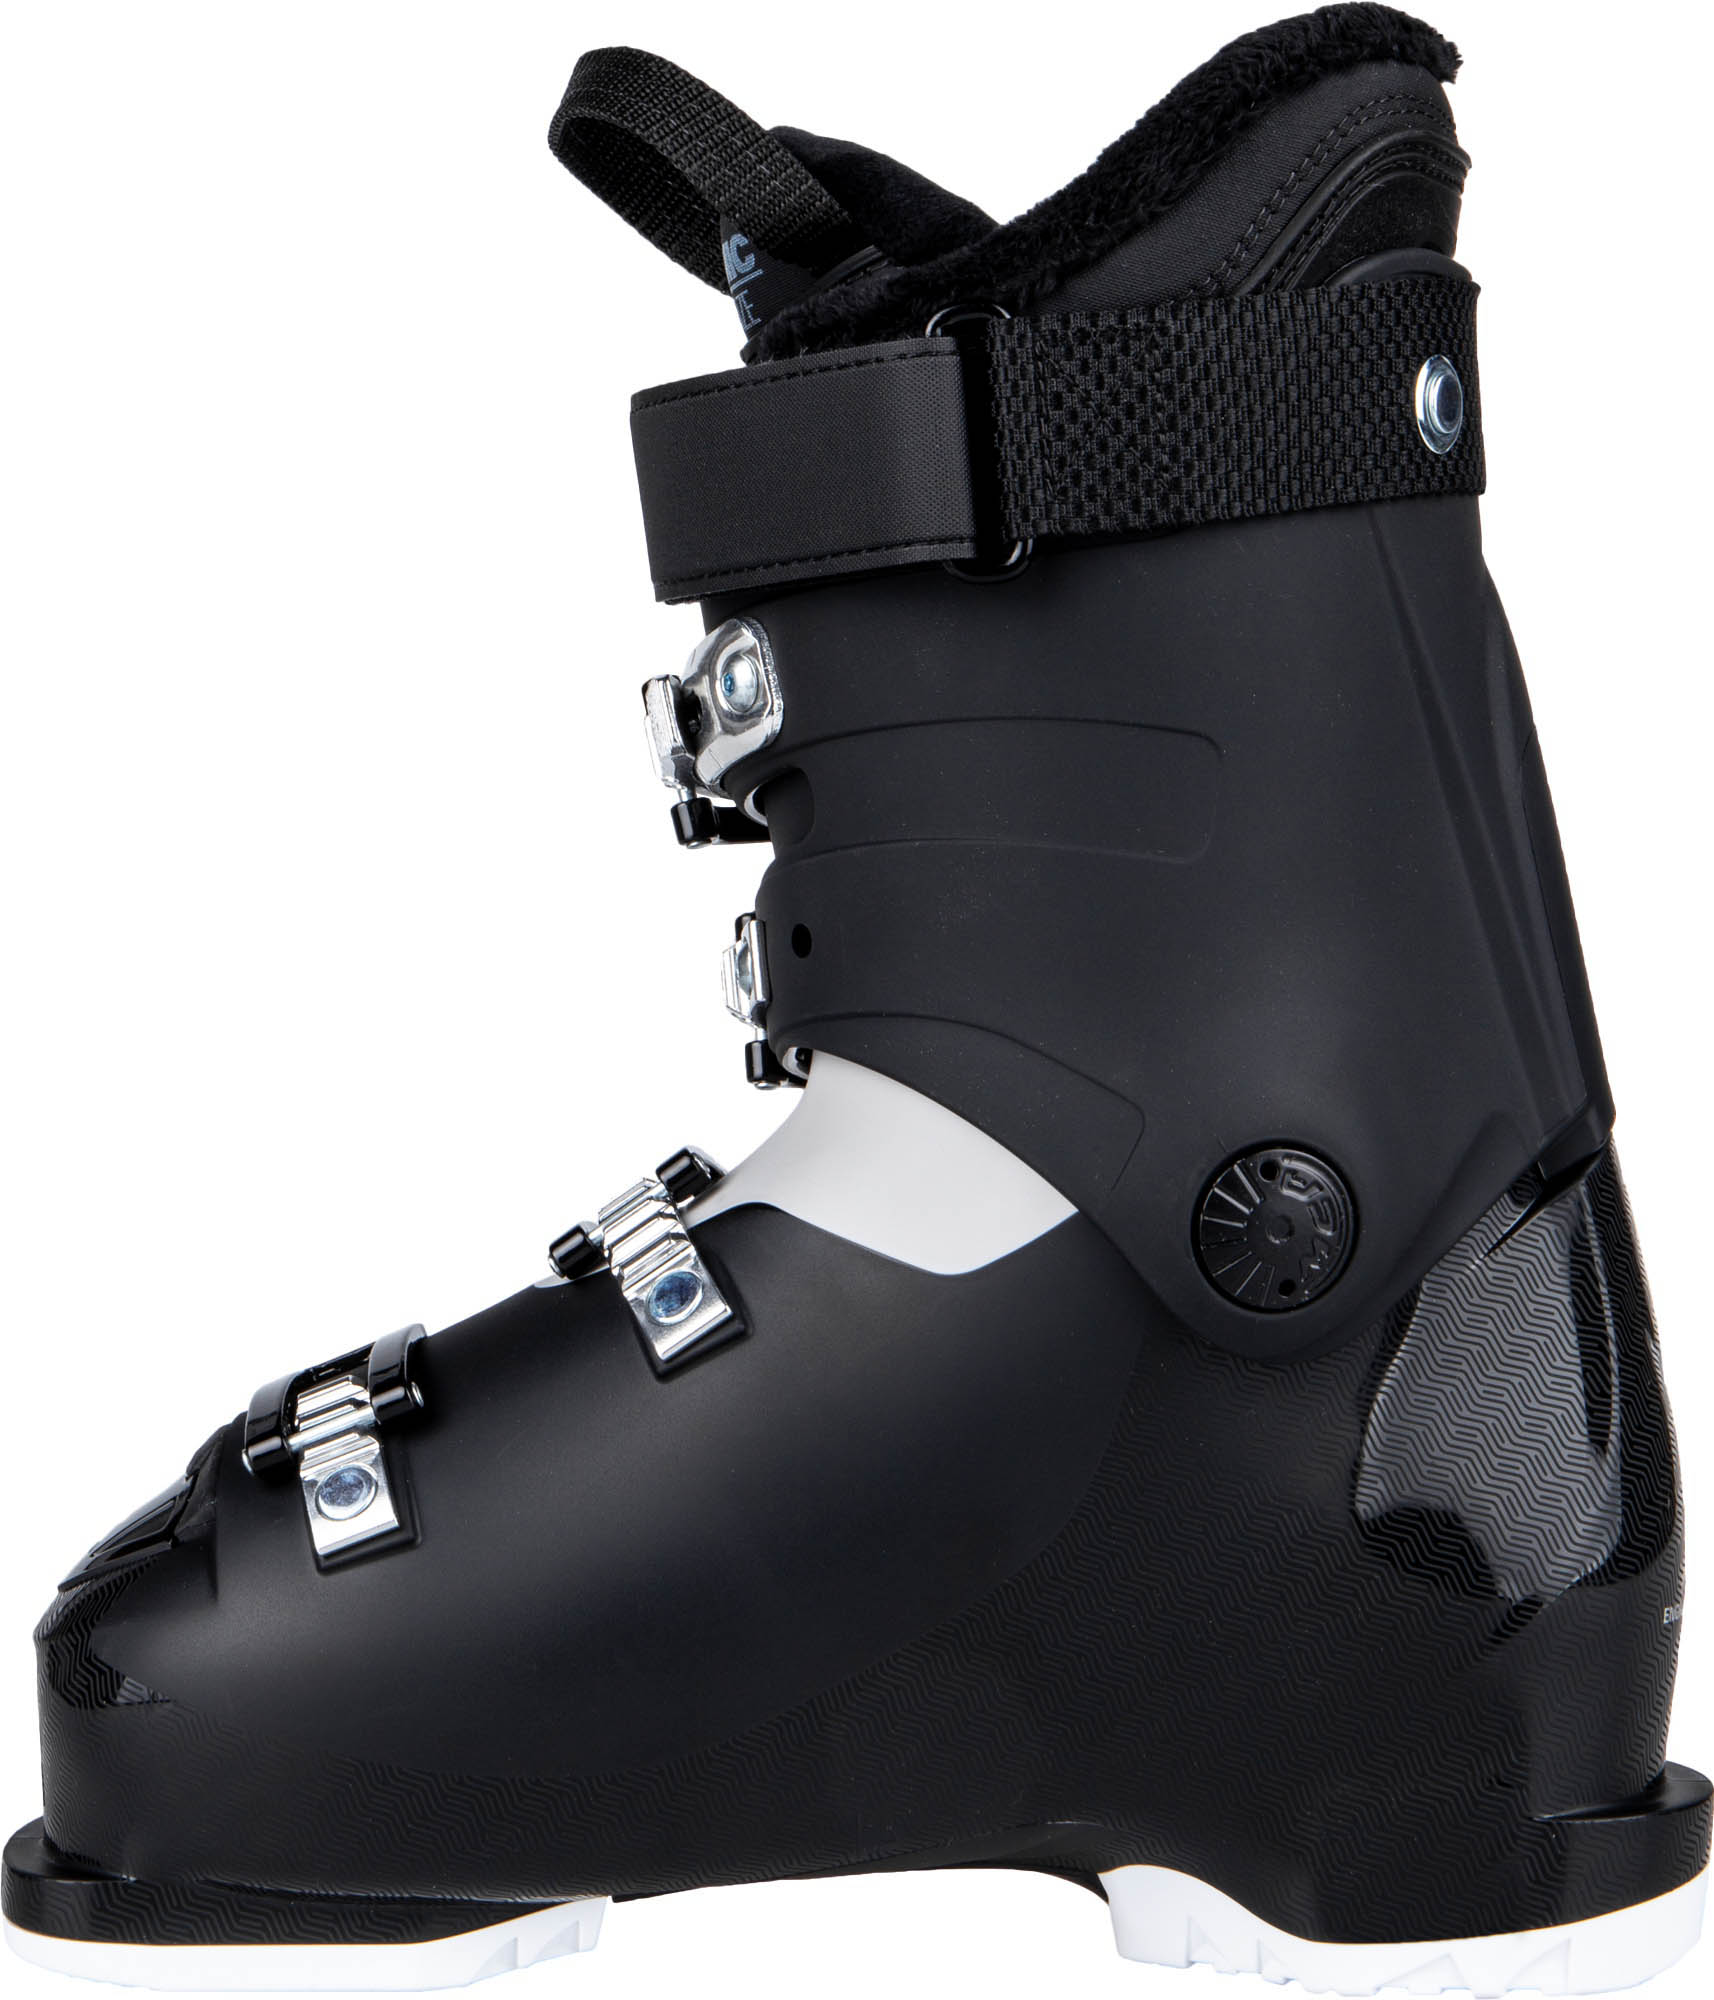 Women's ski boots